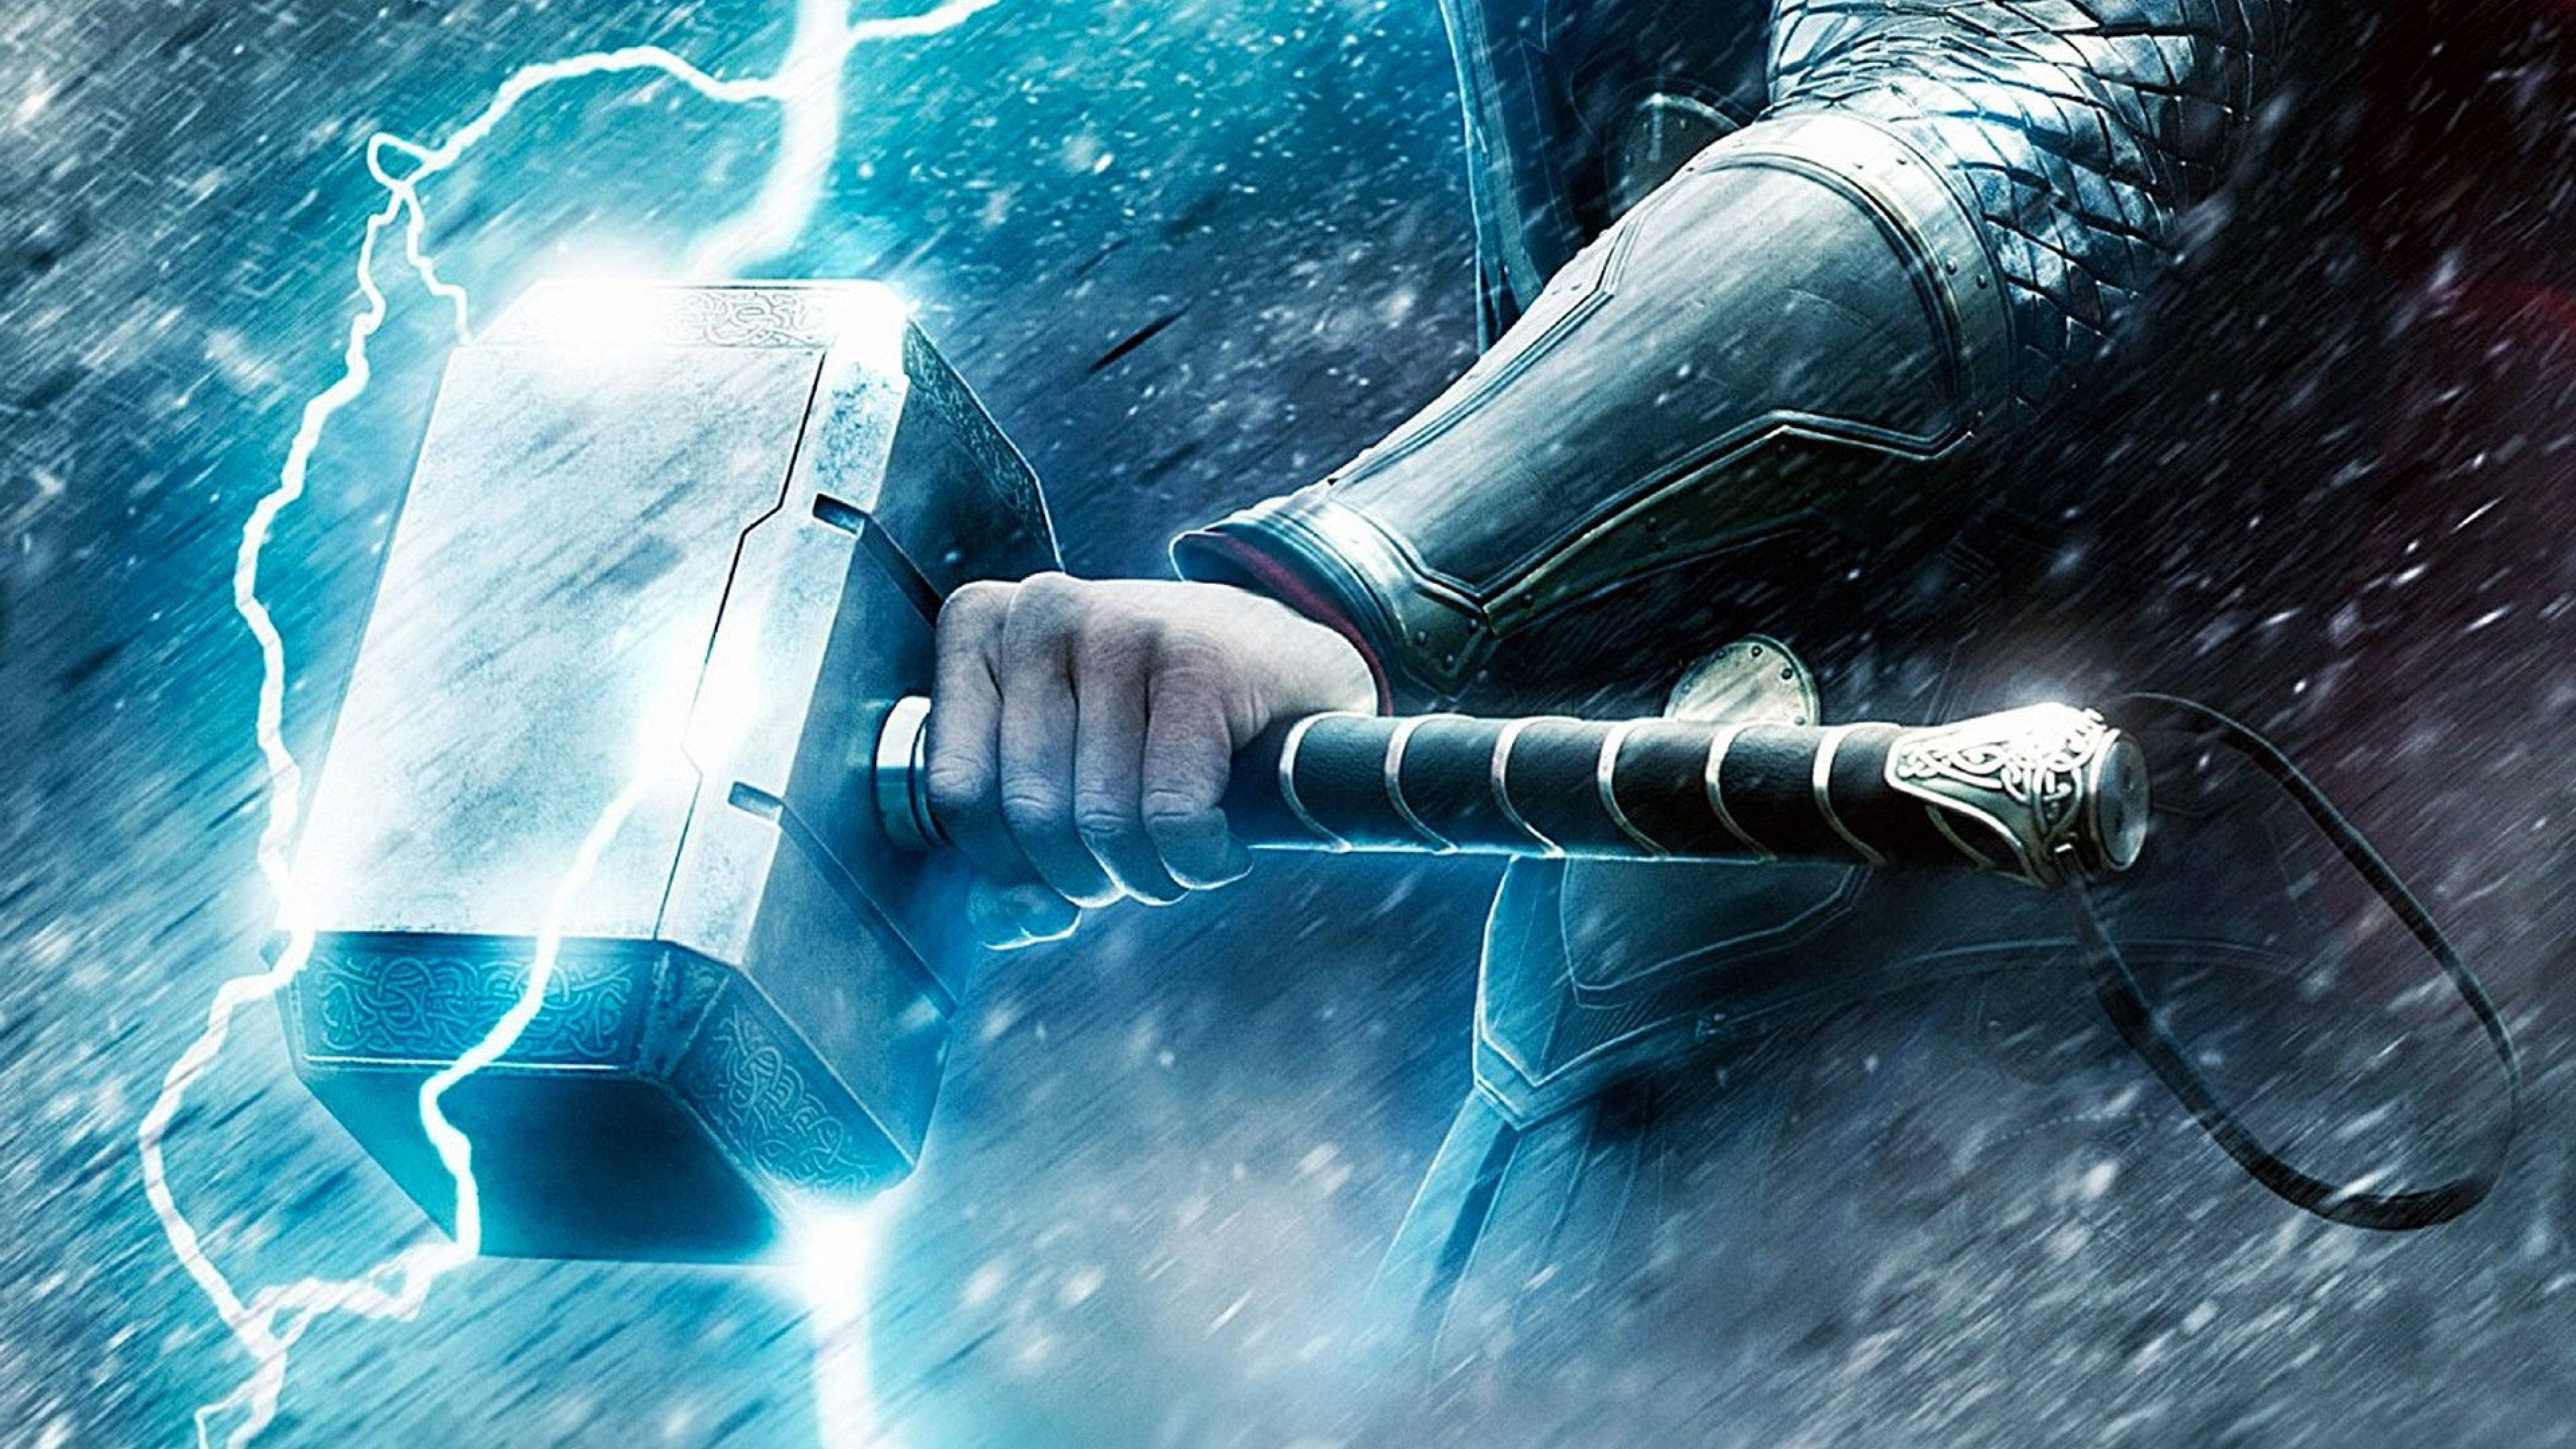 Marvel Thor Stormbreaker And Mjolnir Wallpaper